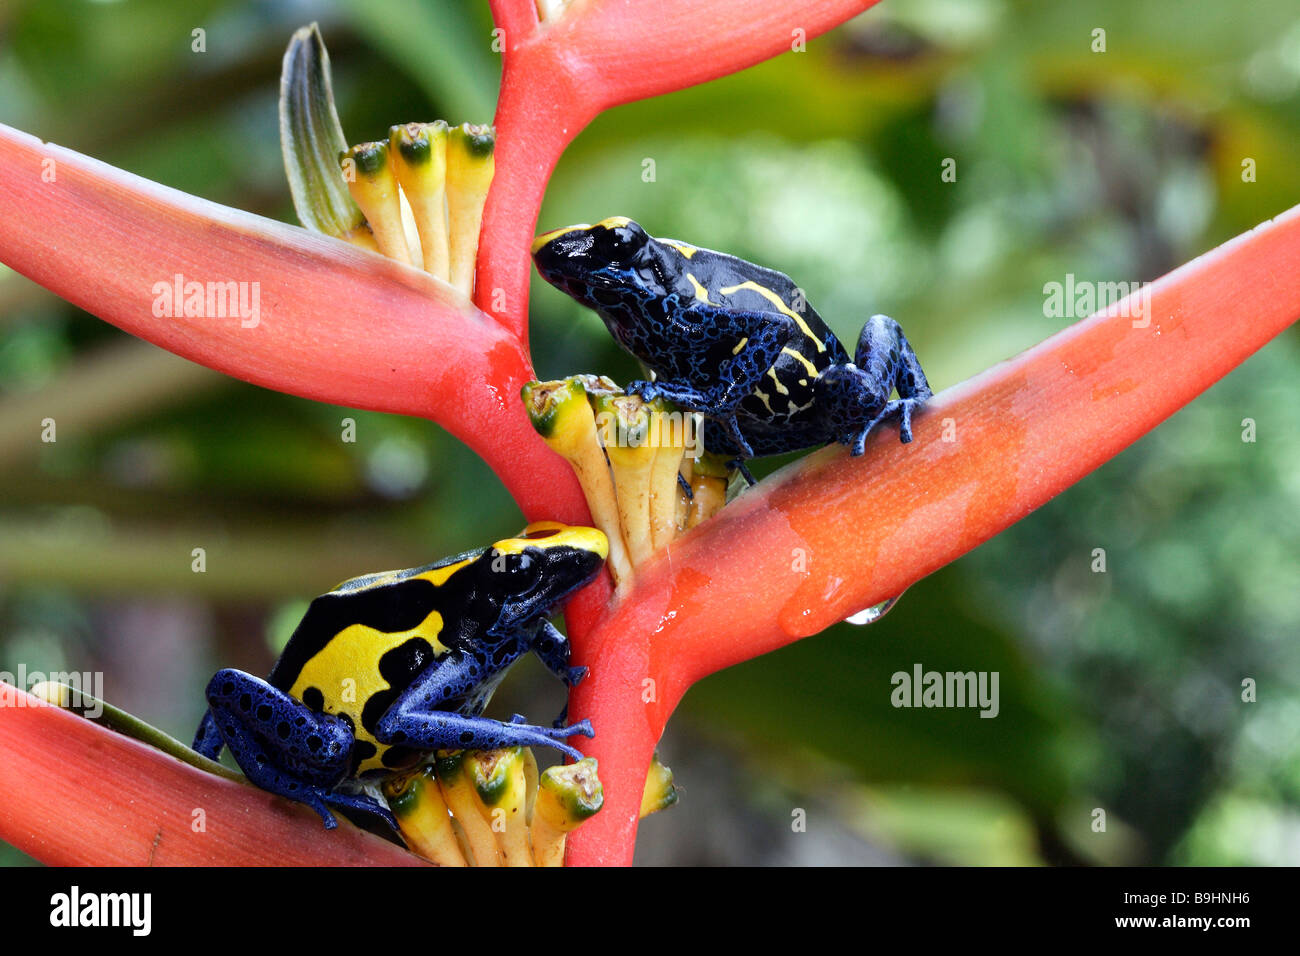 Bleu et jaune flèche empoisonnée (Dendrobates tinctorius grenouille), deux individus assis sur la floraison Heliconia Banque D'Images